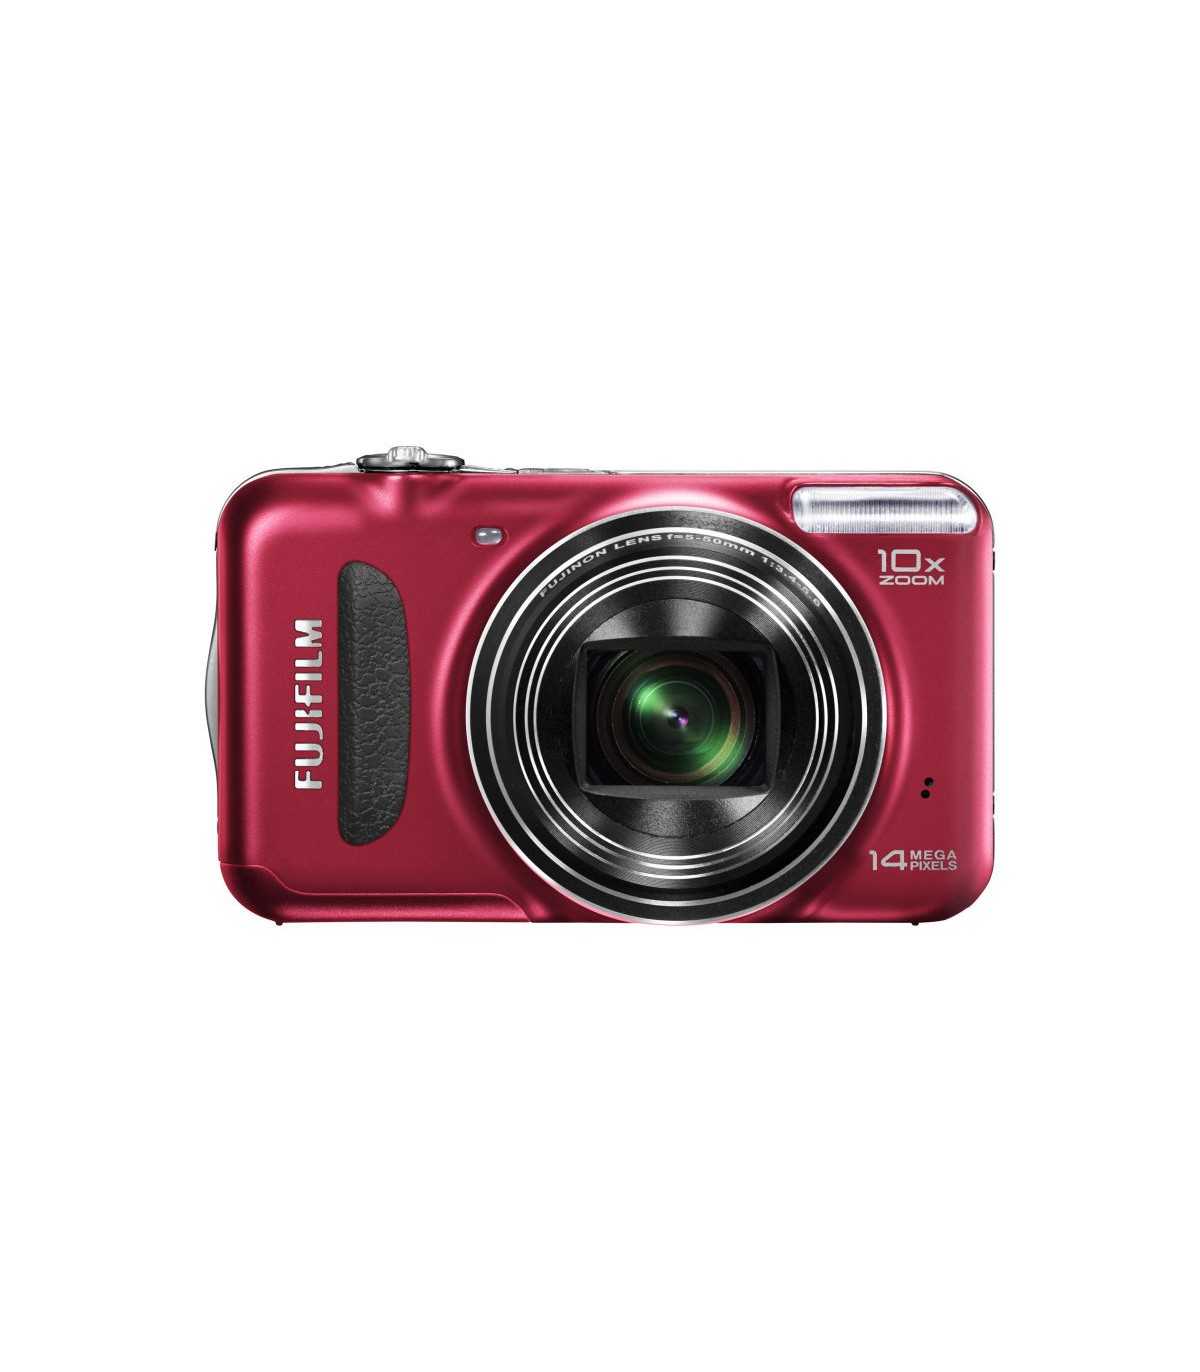 Fujifilm finepix t300 - купить , скидки, цена, отзывы, обзор, характеристики - фотоаппараты цифровые